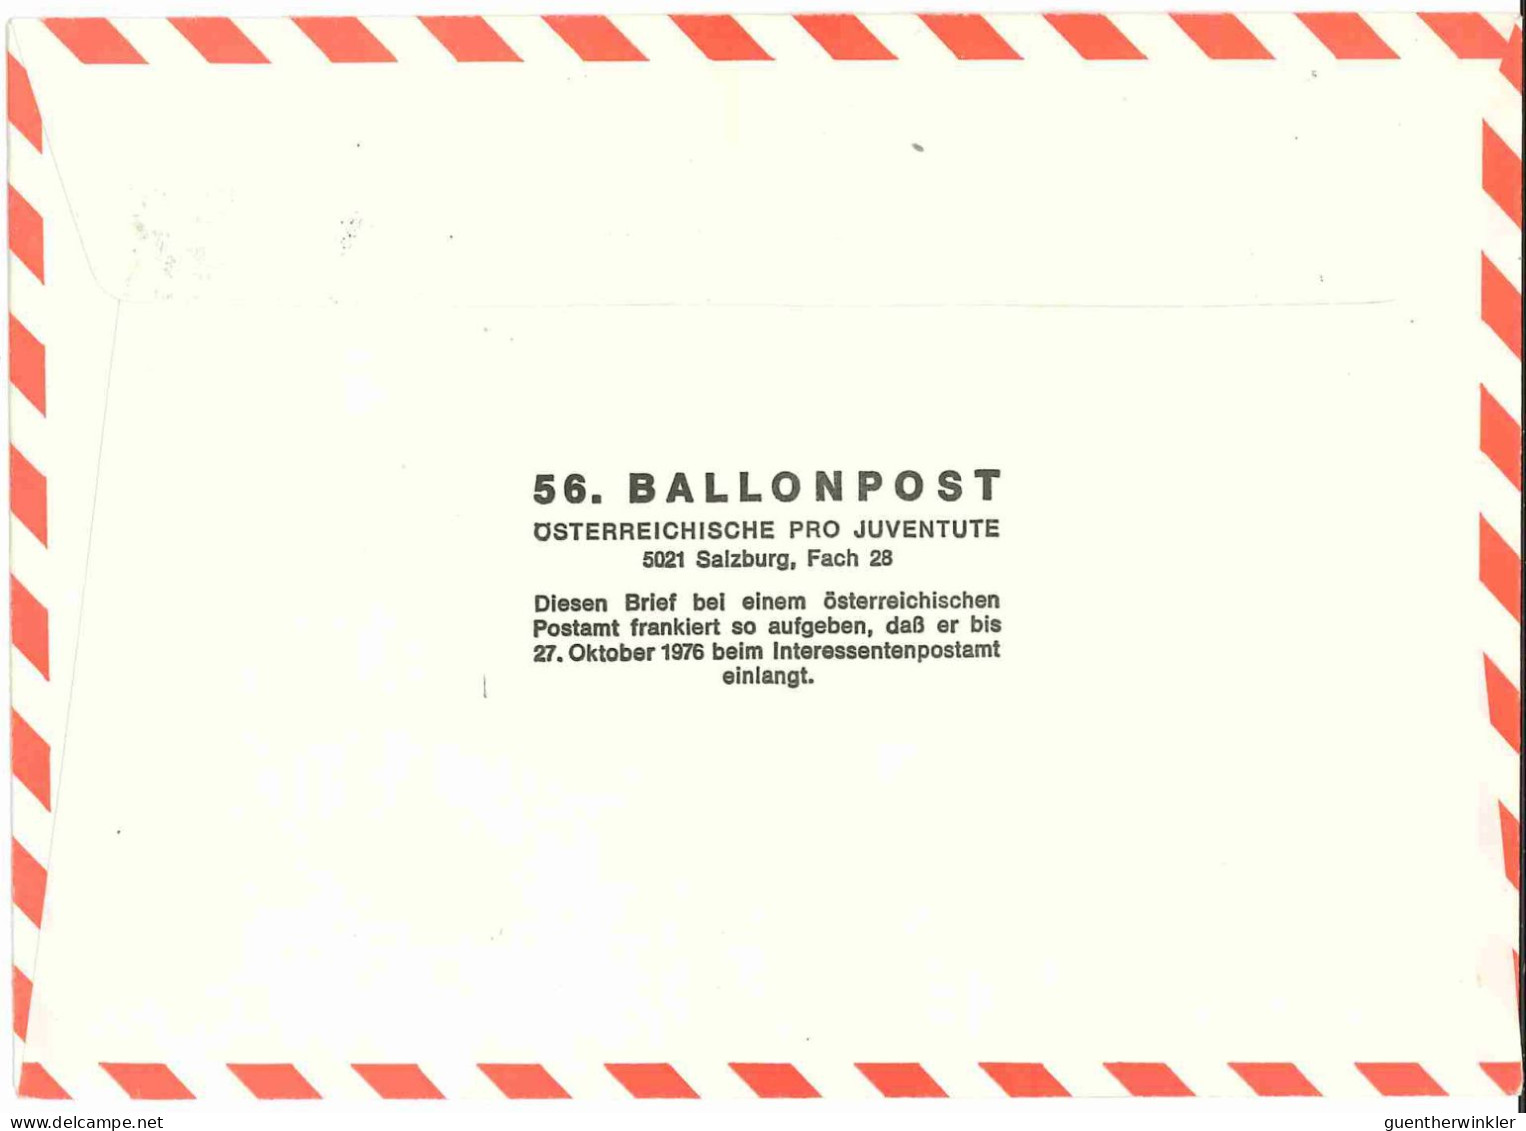 Regulärer Ballonpostflug Nr. 56a Der Pro Juventute [RBP56.] - Ballonpost